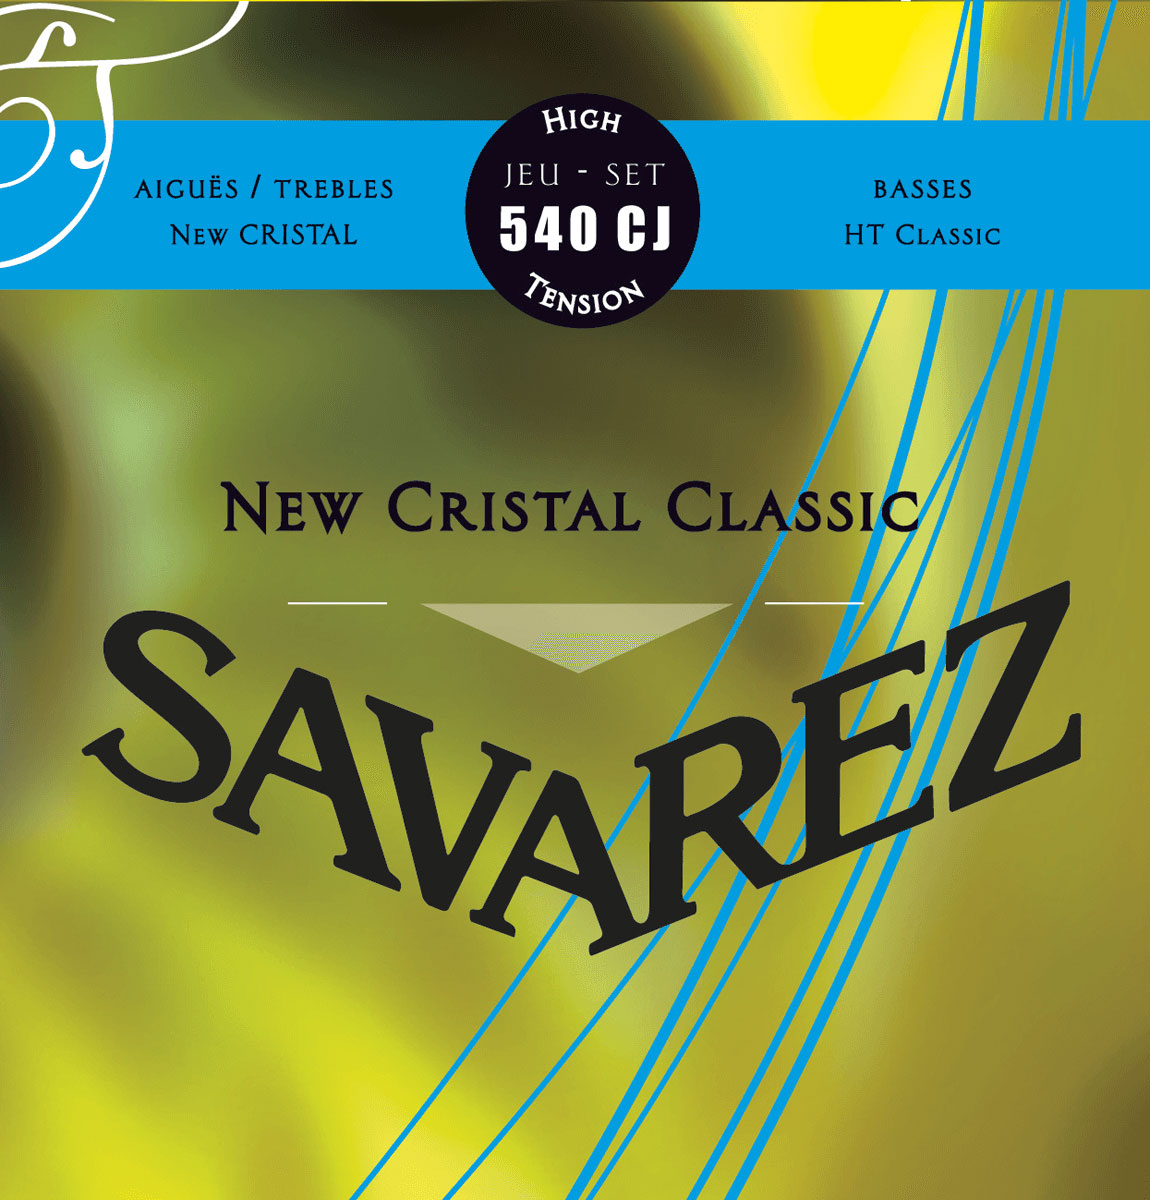 SAVAREZ 540CJ NEW CRISTAL CLASSIC TIRANT FORTE